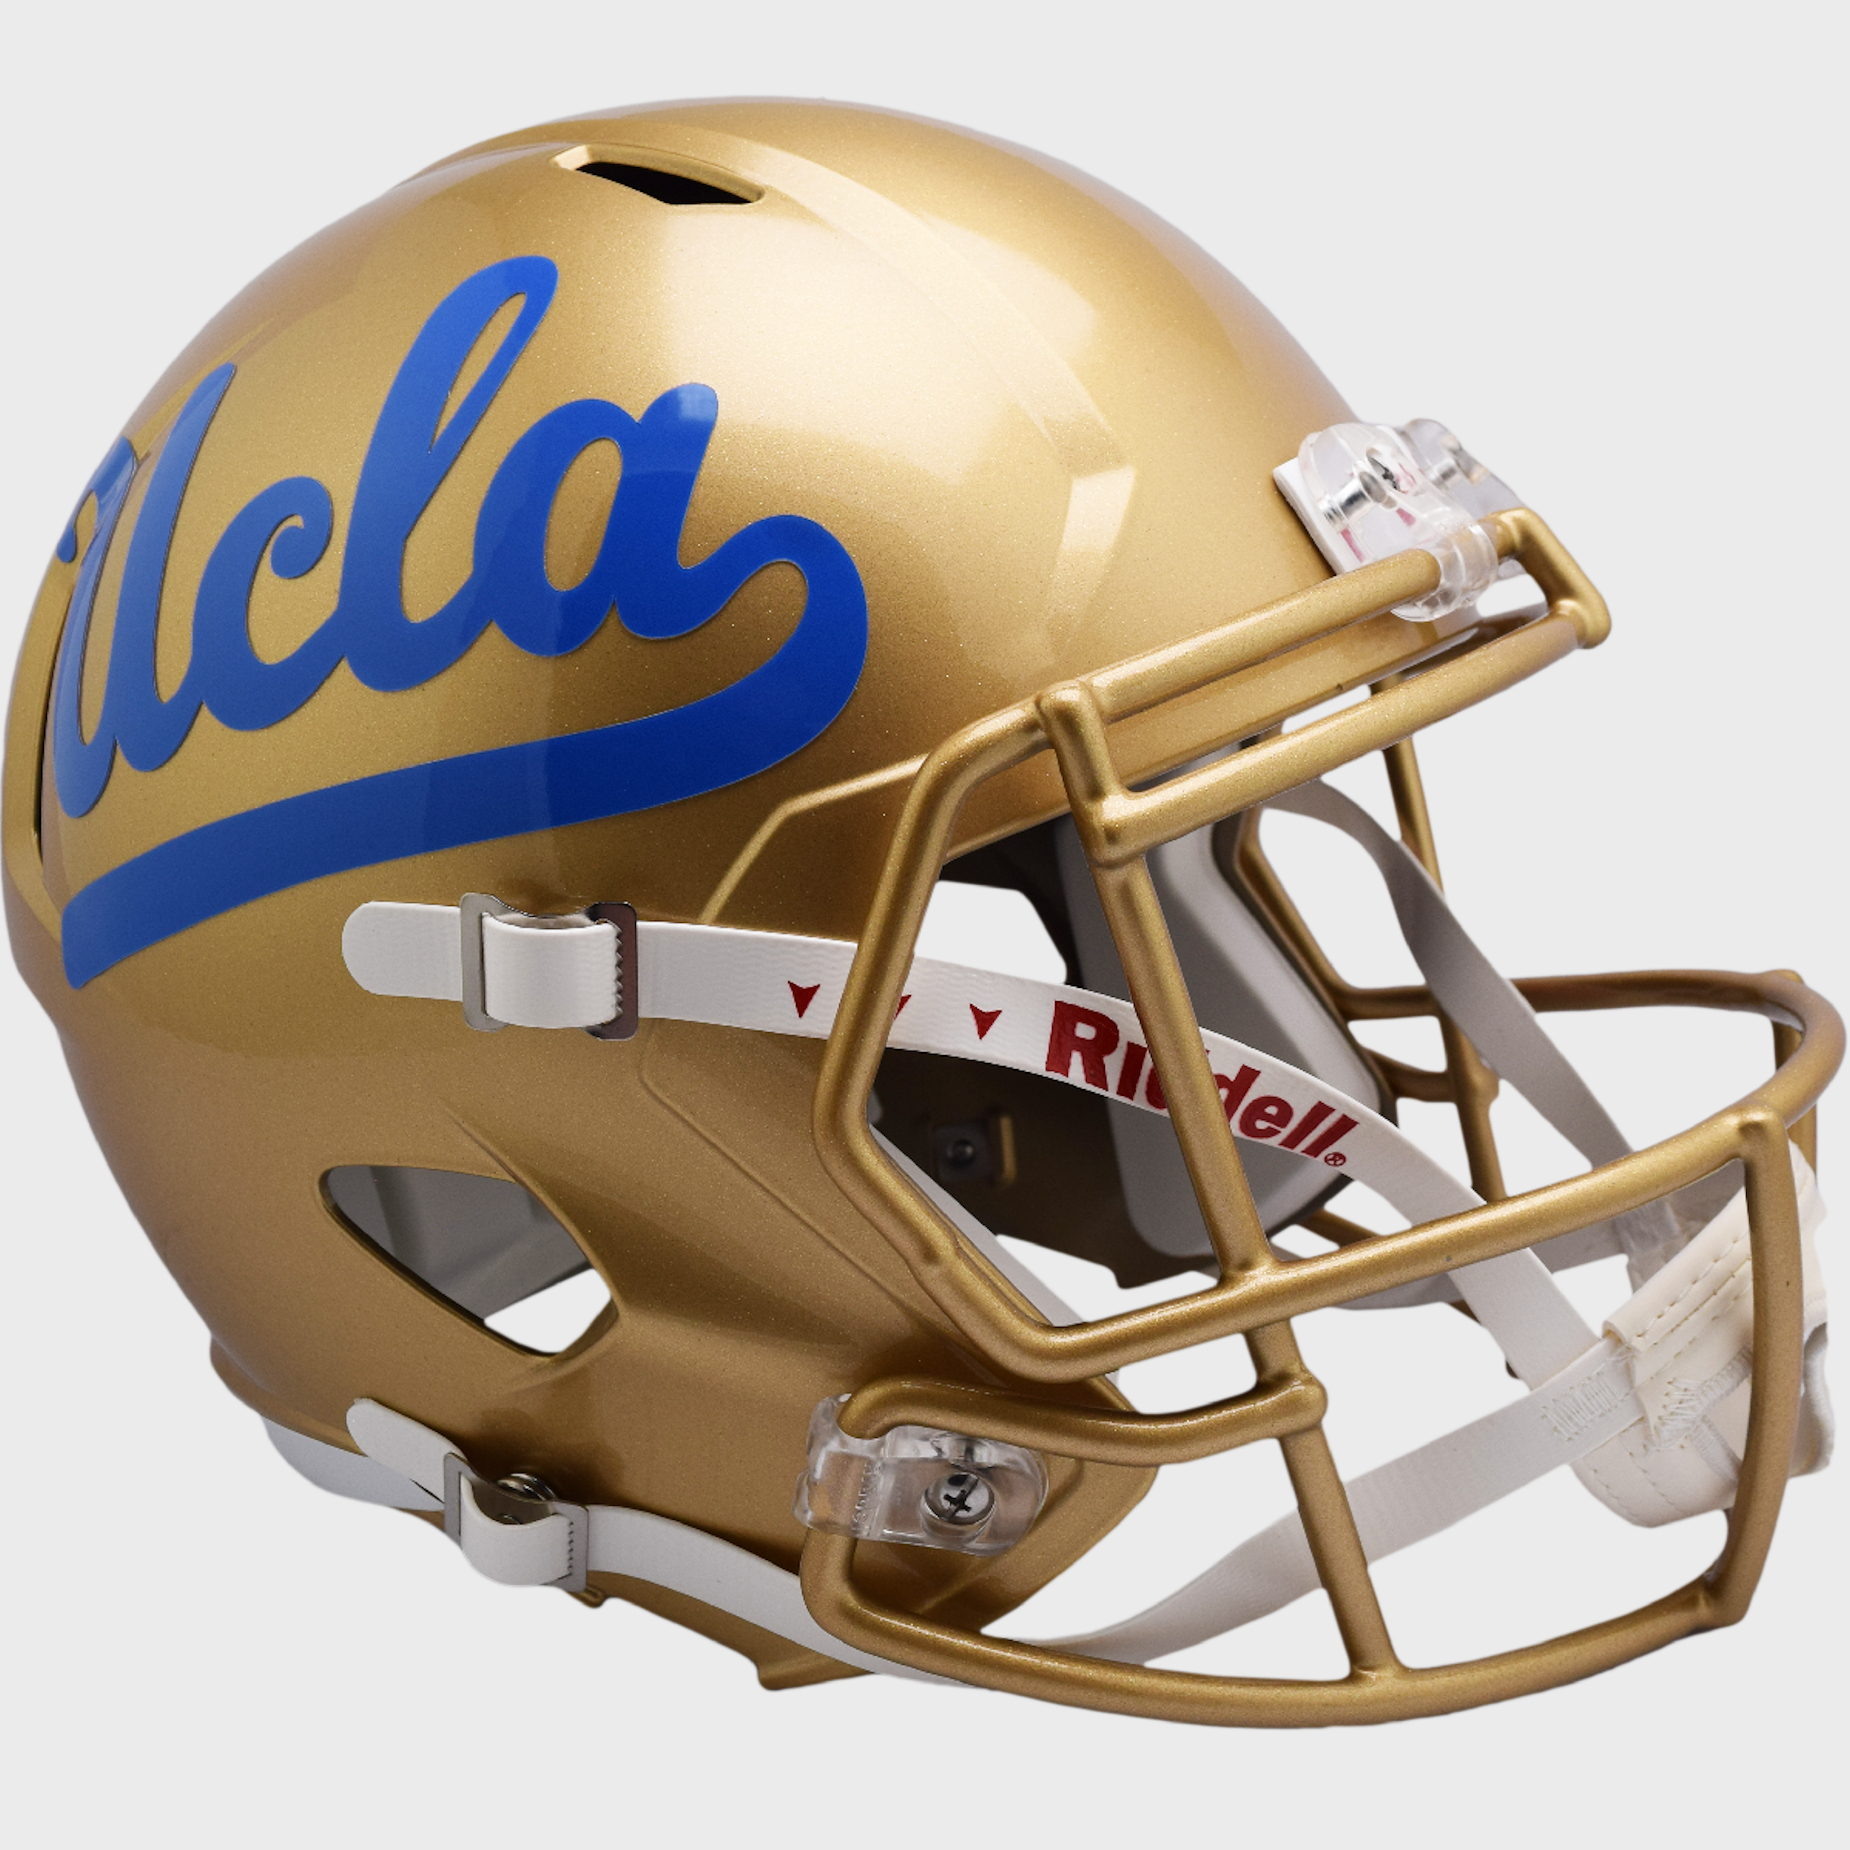 UCLA Bruins full size replica helmet